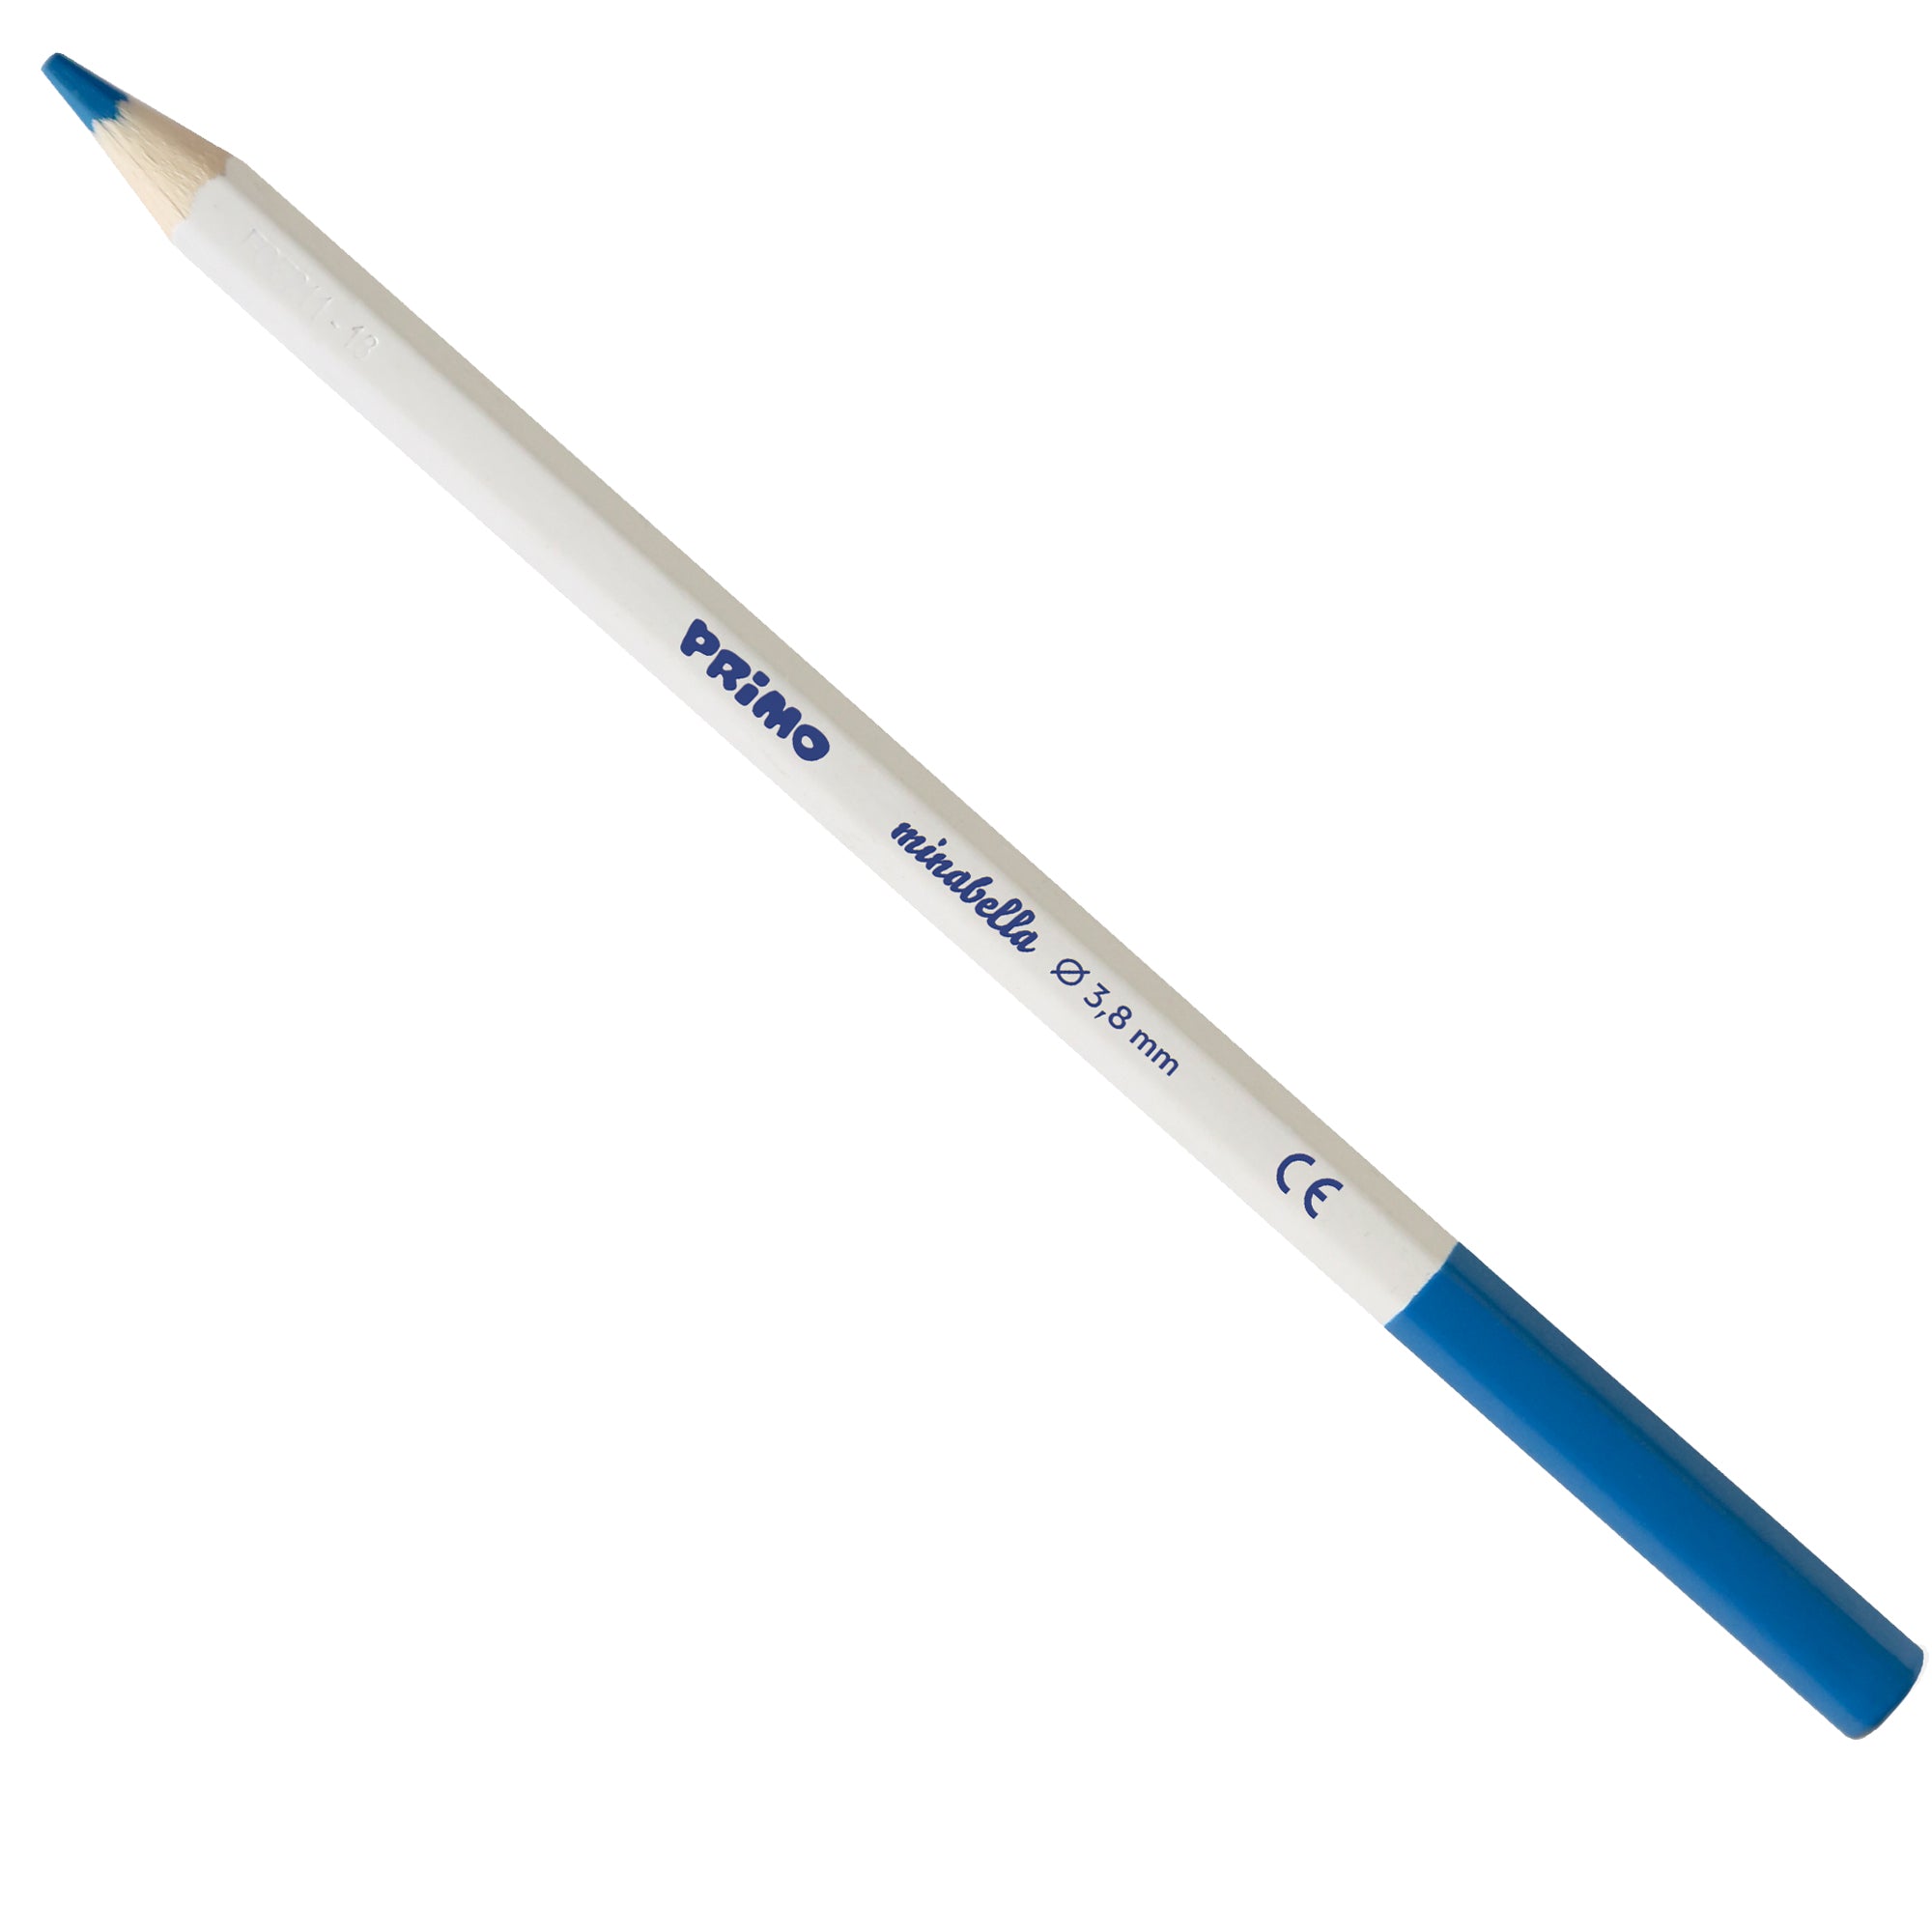 primo-morocolor-astuccio-6-matite-minabella-diam-3-8mm-colori-fluo-assortiti-primo